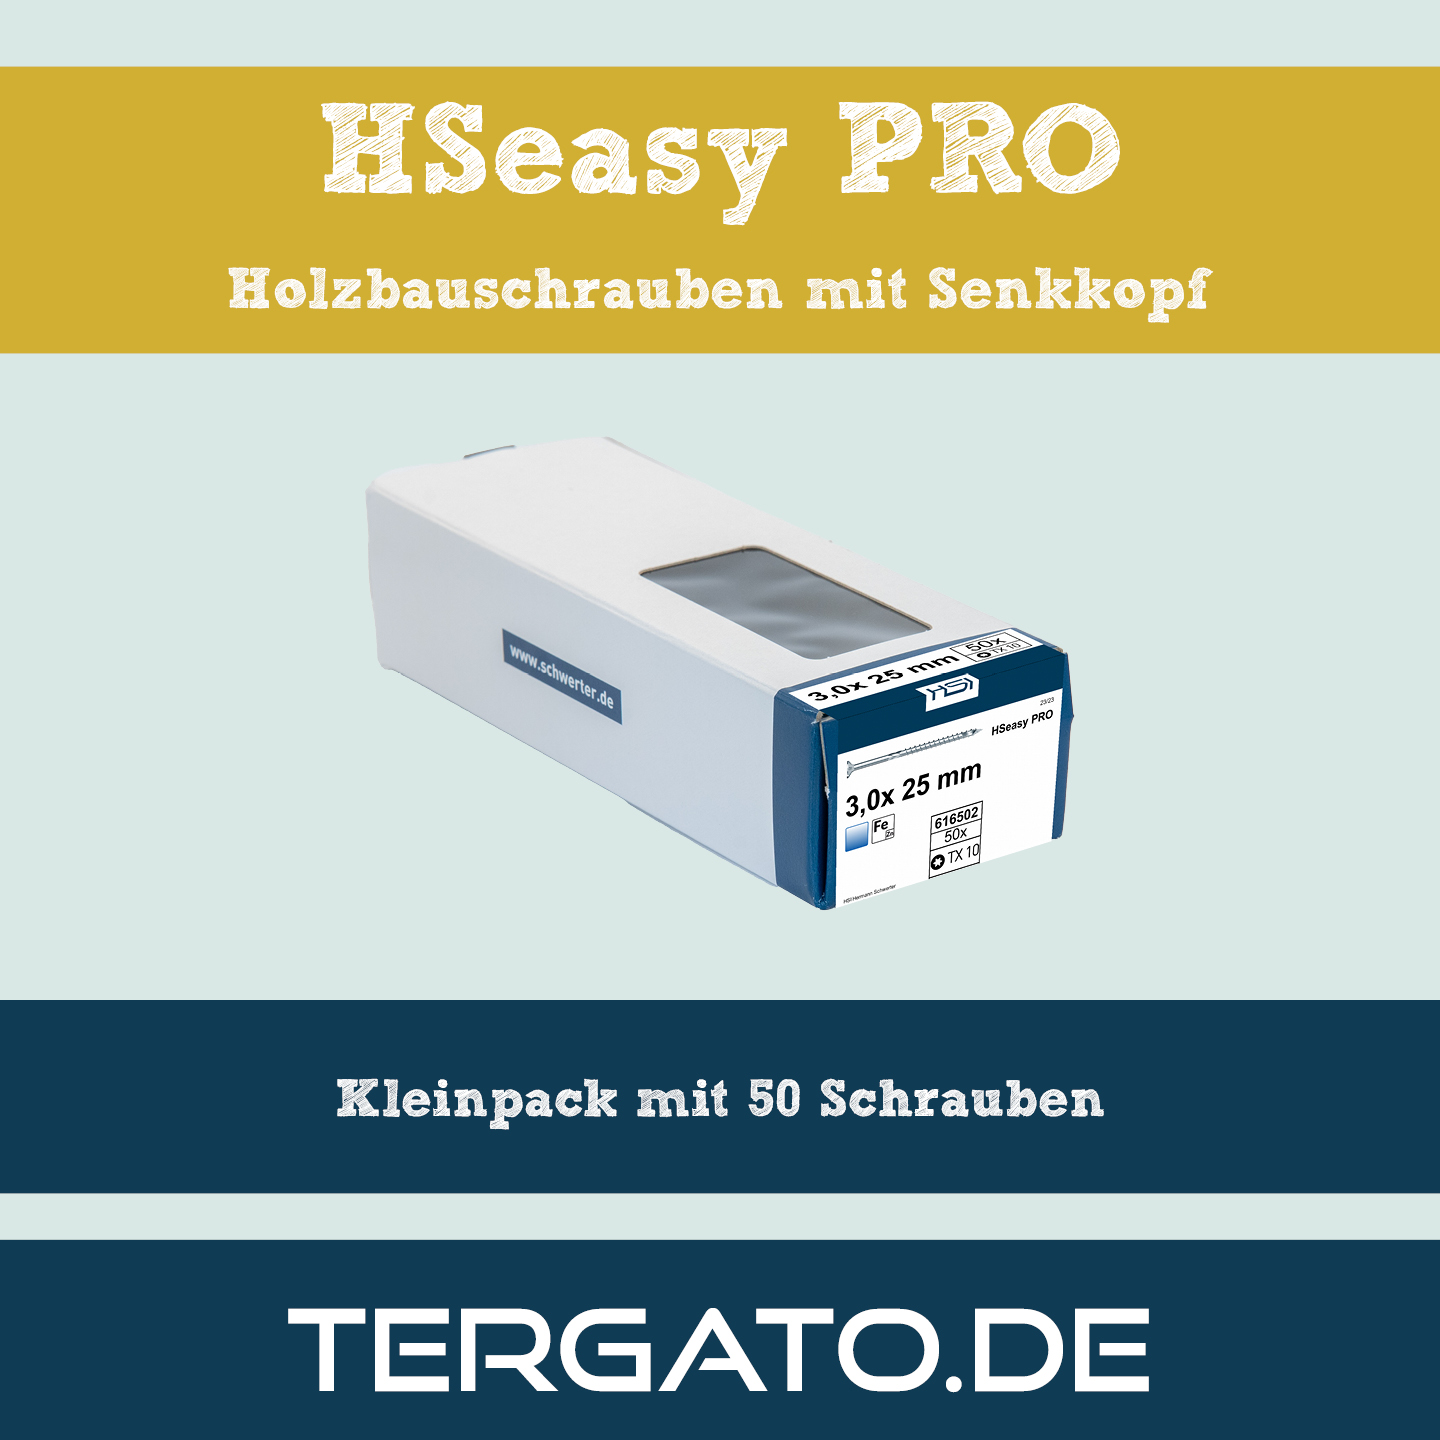 HSeasy PRO SK – im praktischen Kleinpack